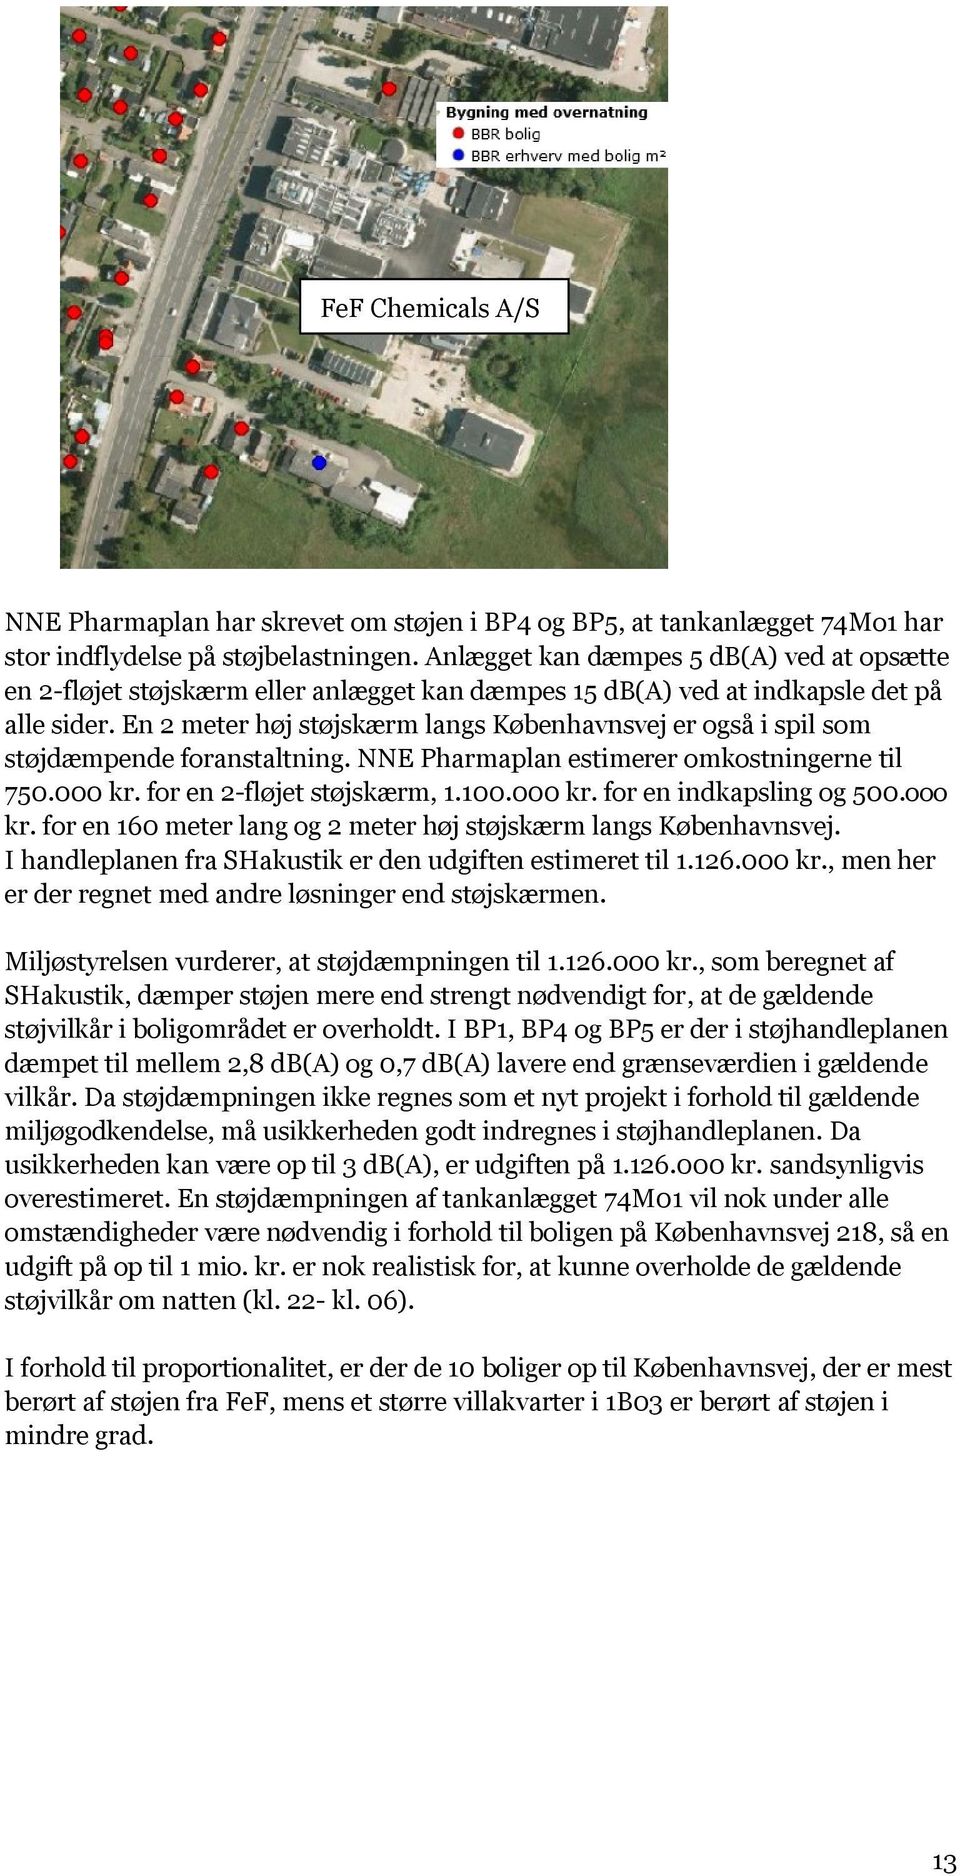 En 2 meter høj støjskærm langs Københavnsvej er også i spil som støjdæmpende foranstaltning. NNE Pharmaplan estimerer omkostningerne til 750.000 kr. for en 2-fløjet støjskærm, 1.100.000 kr. for en indkapsling og 500.